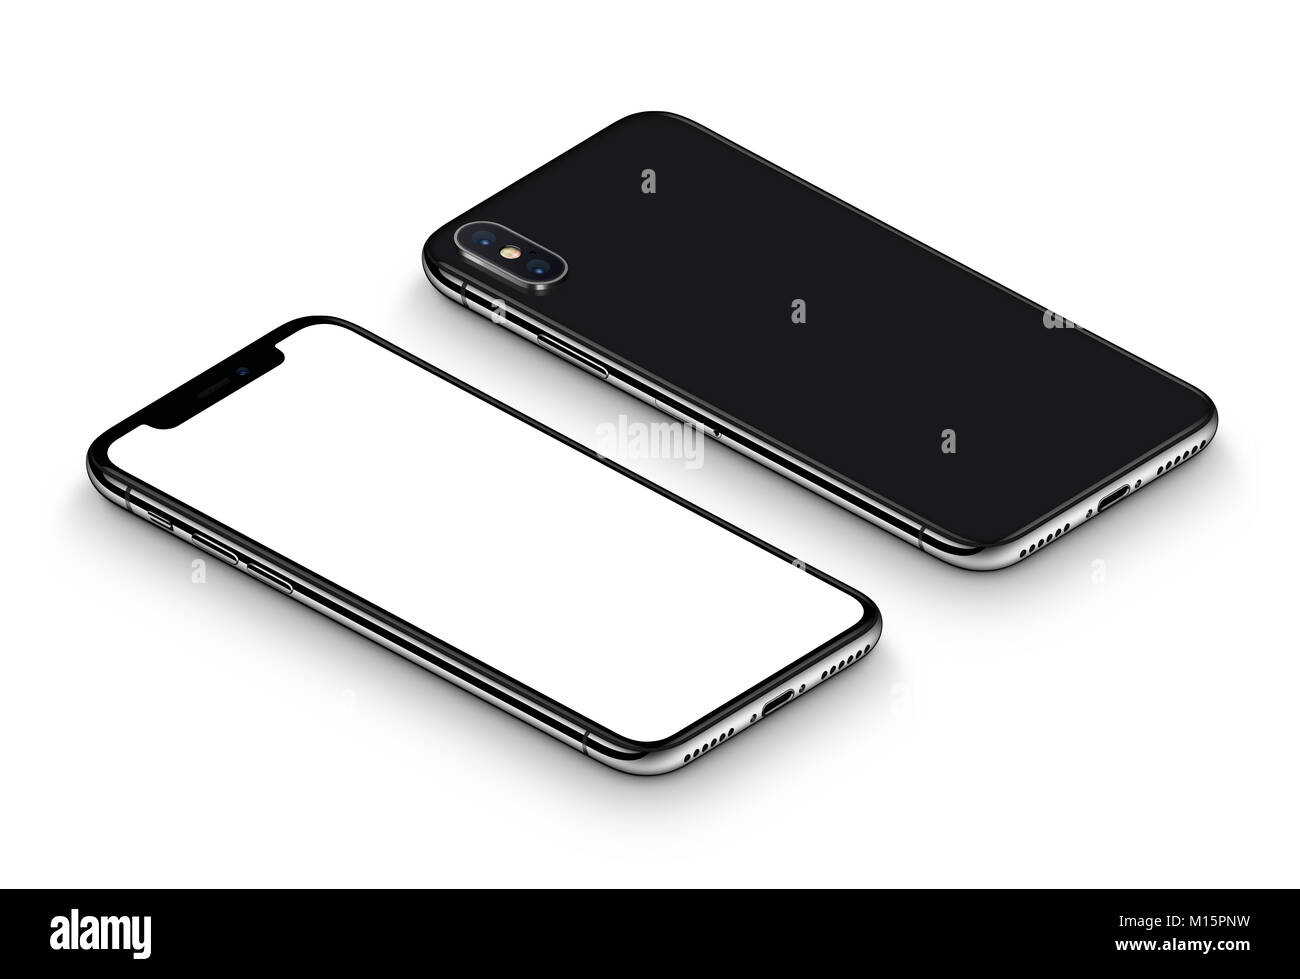 Ähnlich wie das iPhone X Perspektive BlackBerry-Smartphone mockup Vorder- und Rückseite GEGEN DEN UHRZEIGERSINN gedreht liegen auf der Oberfläche. Stockfoto